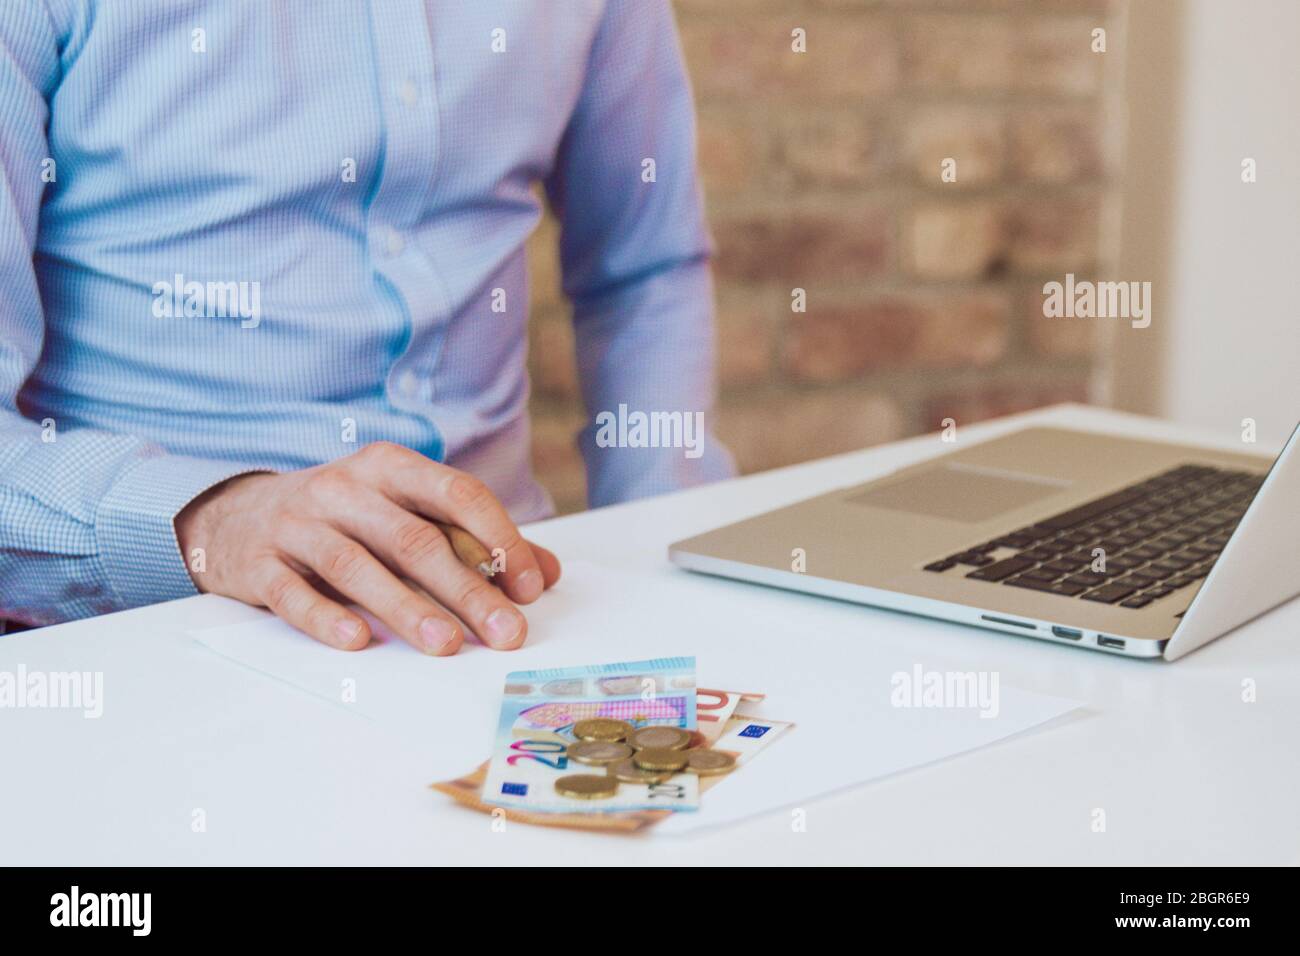 Mann, der an einem Schreibtisch mit Laptop sitzt und Zeitungen in hellblauem Hemd liest. Leichter Arbeitsplatz, Geschäftsraum. Arbeitsumgebung. Backsteinmauer Hintergrund. Stockfoto